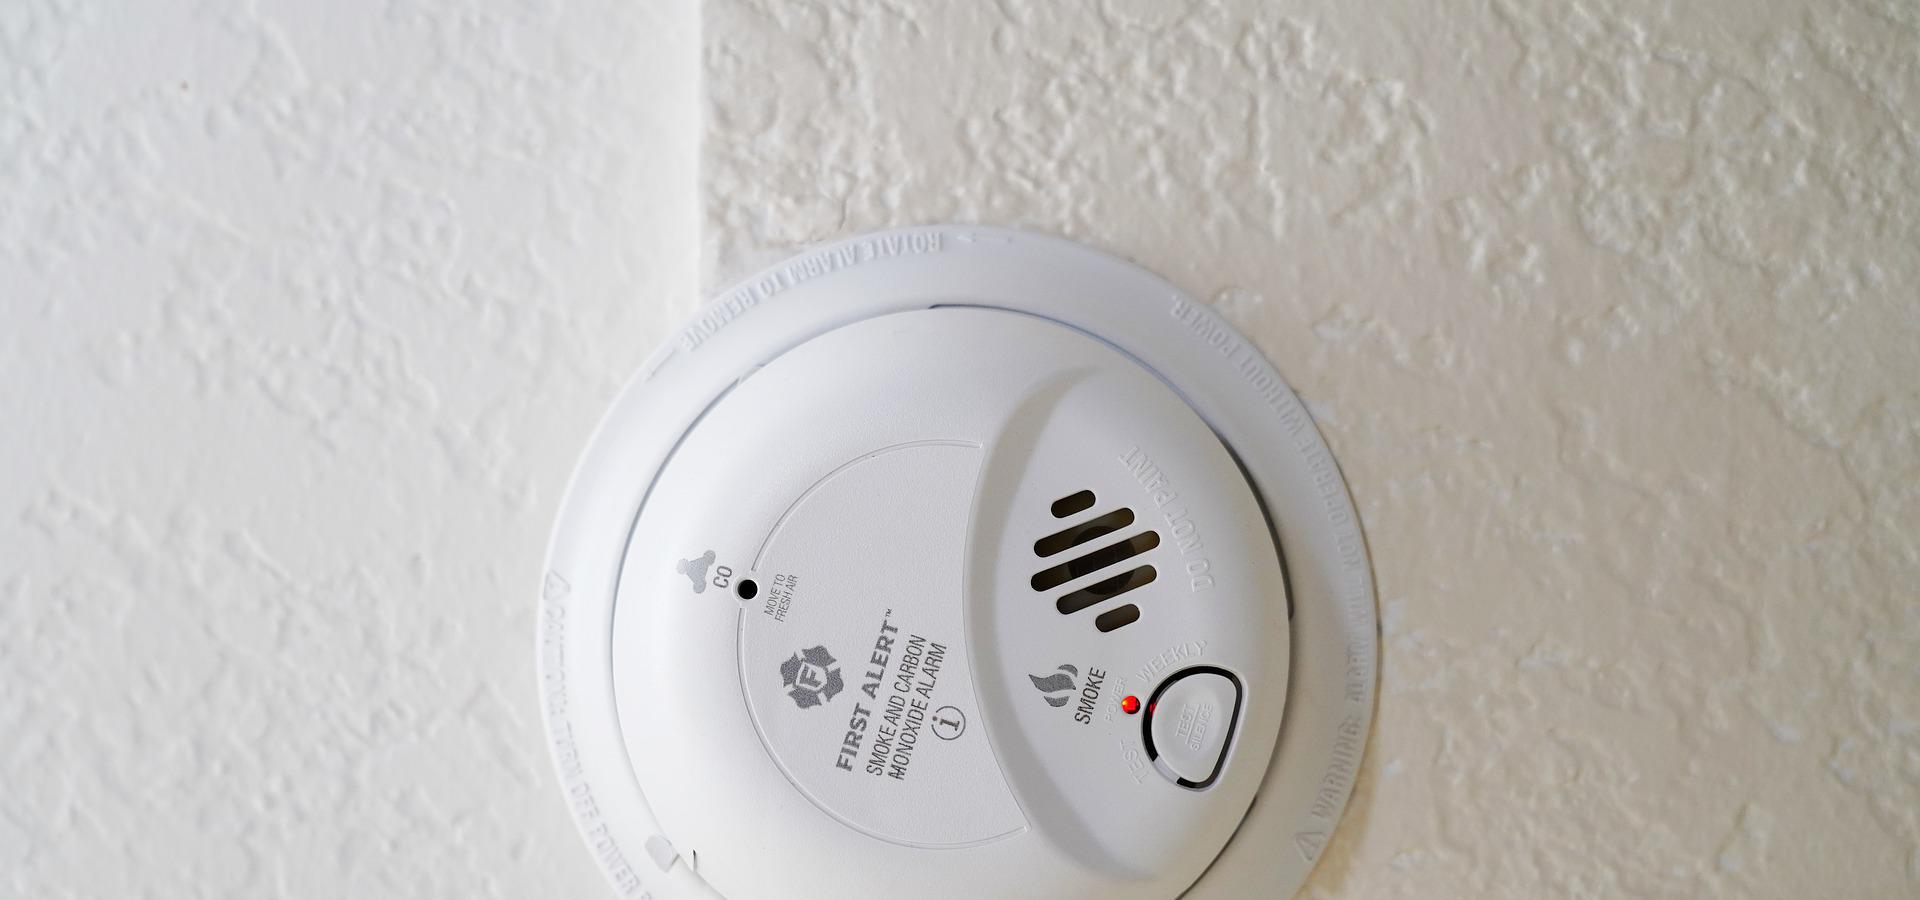 Fire and carbon monoxide alarm